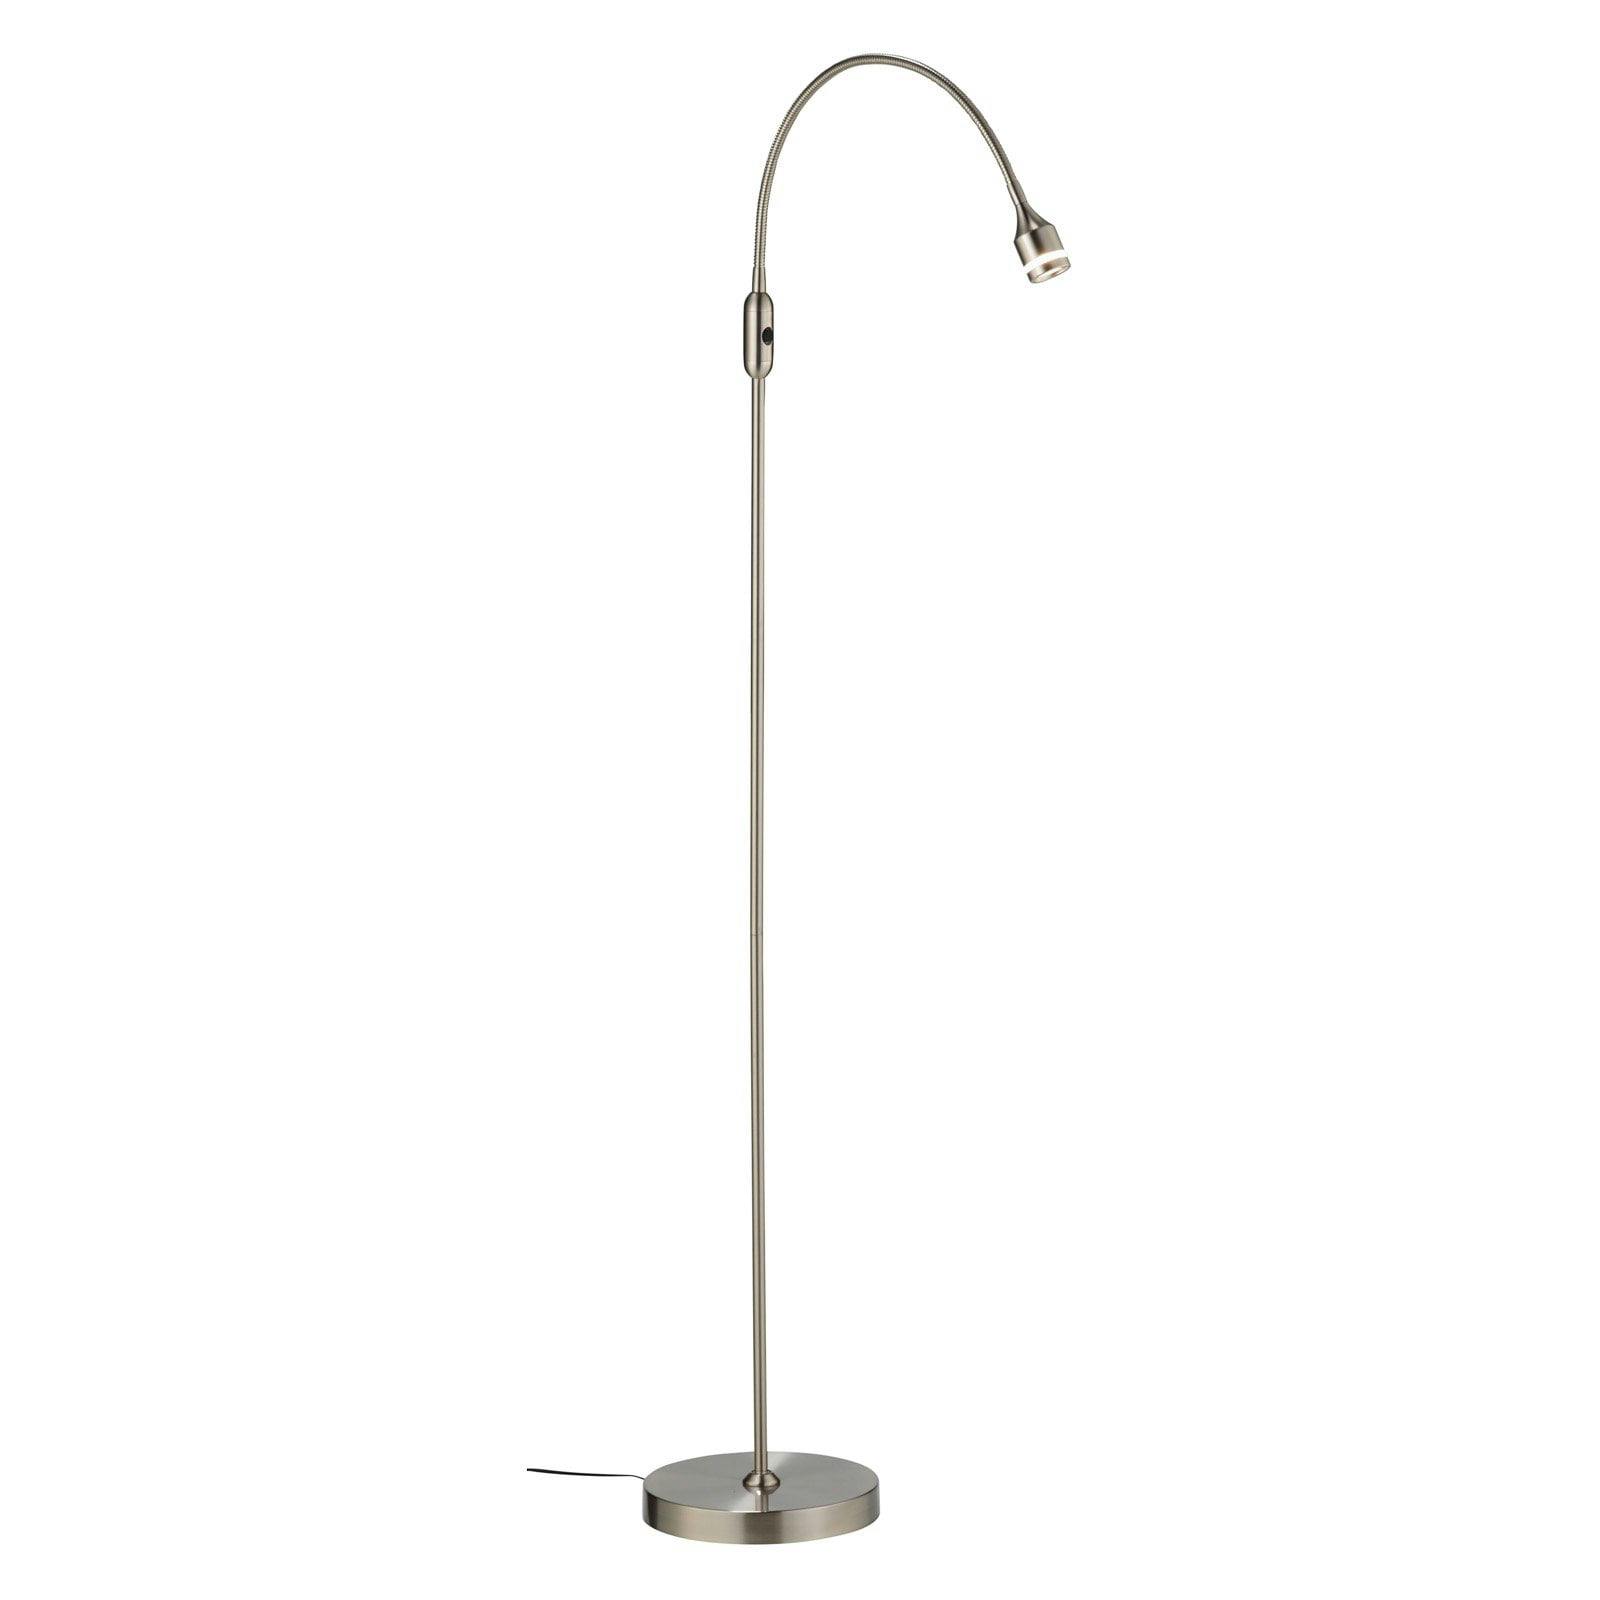 Adesso Arc Adjustable Brushed Steel LED Floor Lamp, 45"-56" Height